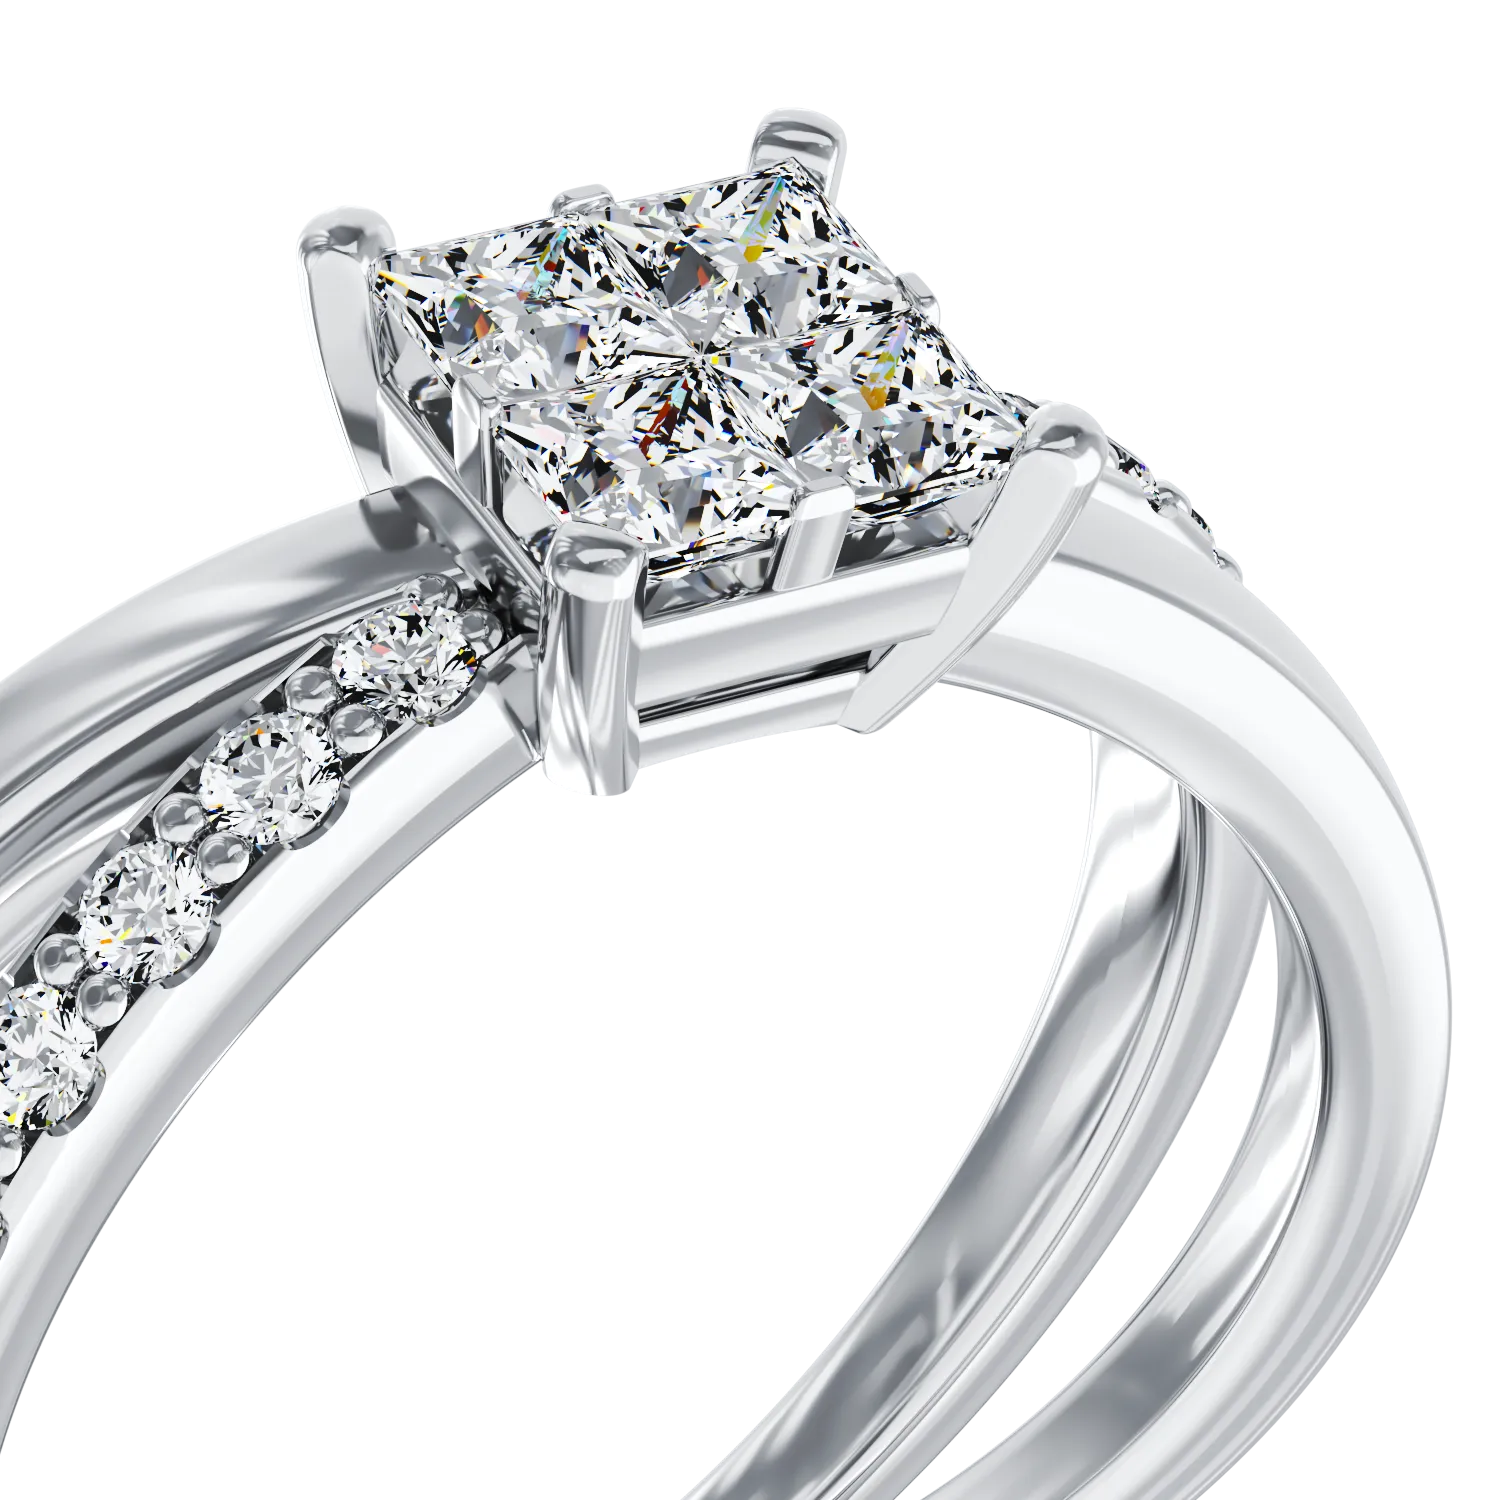 Eljegyzési gyűrű 18K-os fehér aranyból 0,37ct gyémánttal és 0,09ct gyémántokkal. Gramm: 4,04